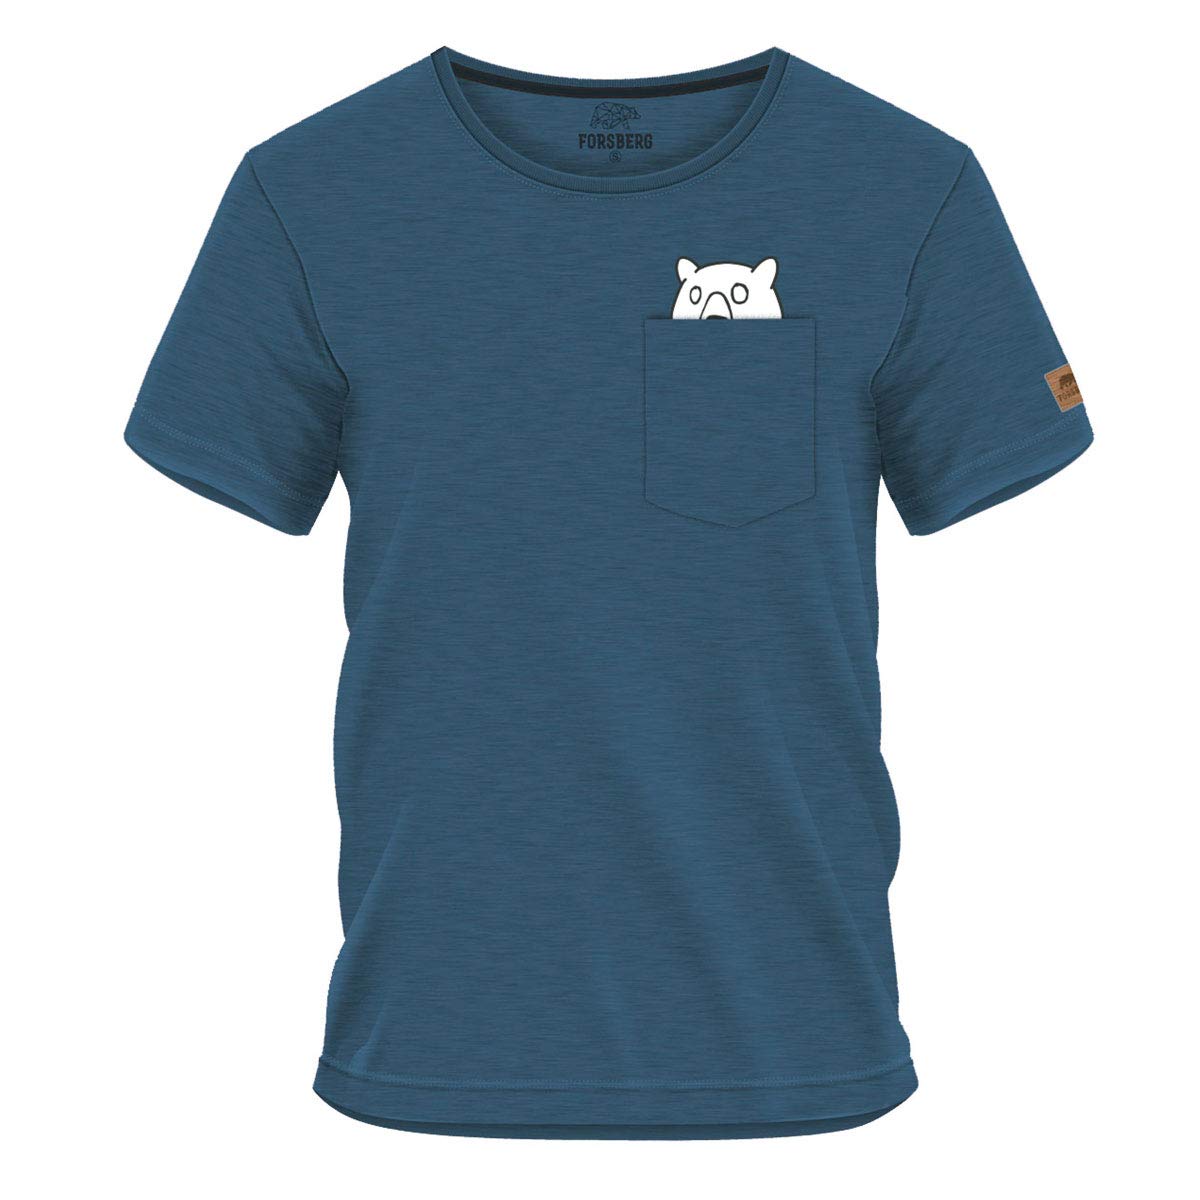 FORSBERG Ölbrorson T-Shirt Brusttasche mit prostendem Bier Bär Funshirt Rundhals bequem robust, Farbe:blau, Größe:XL